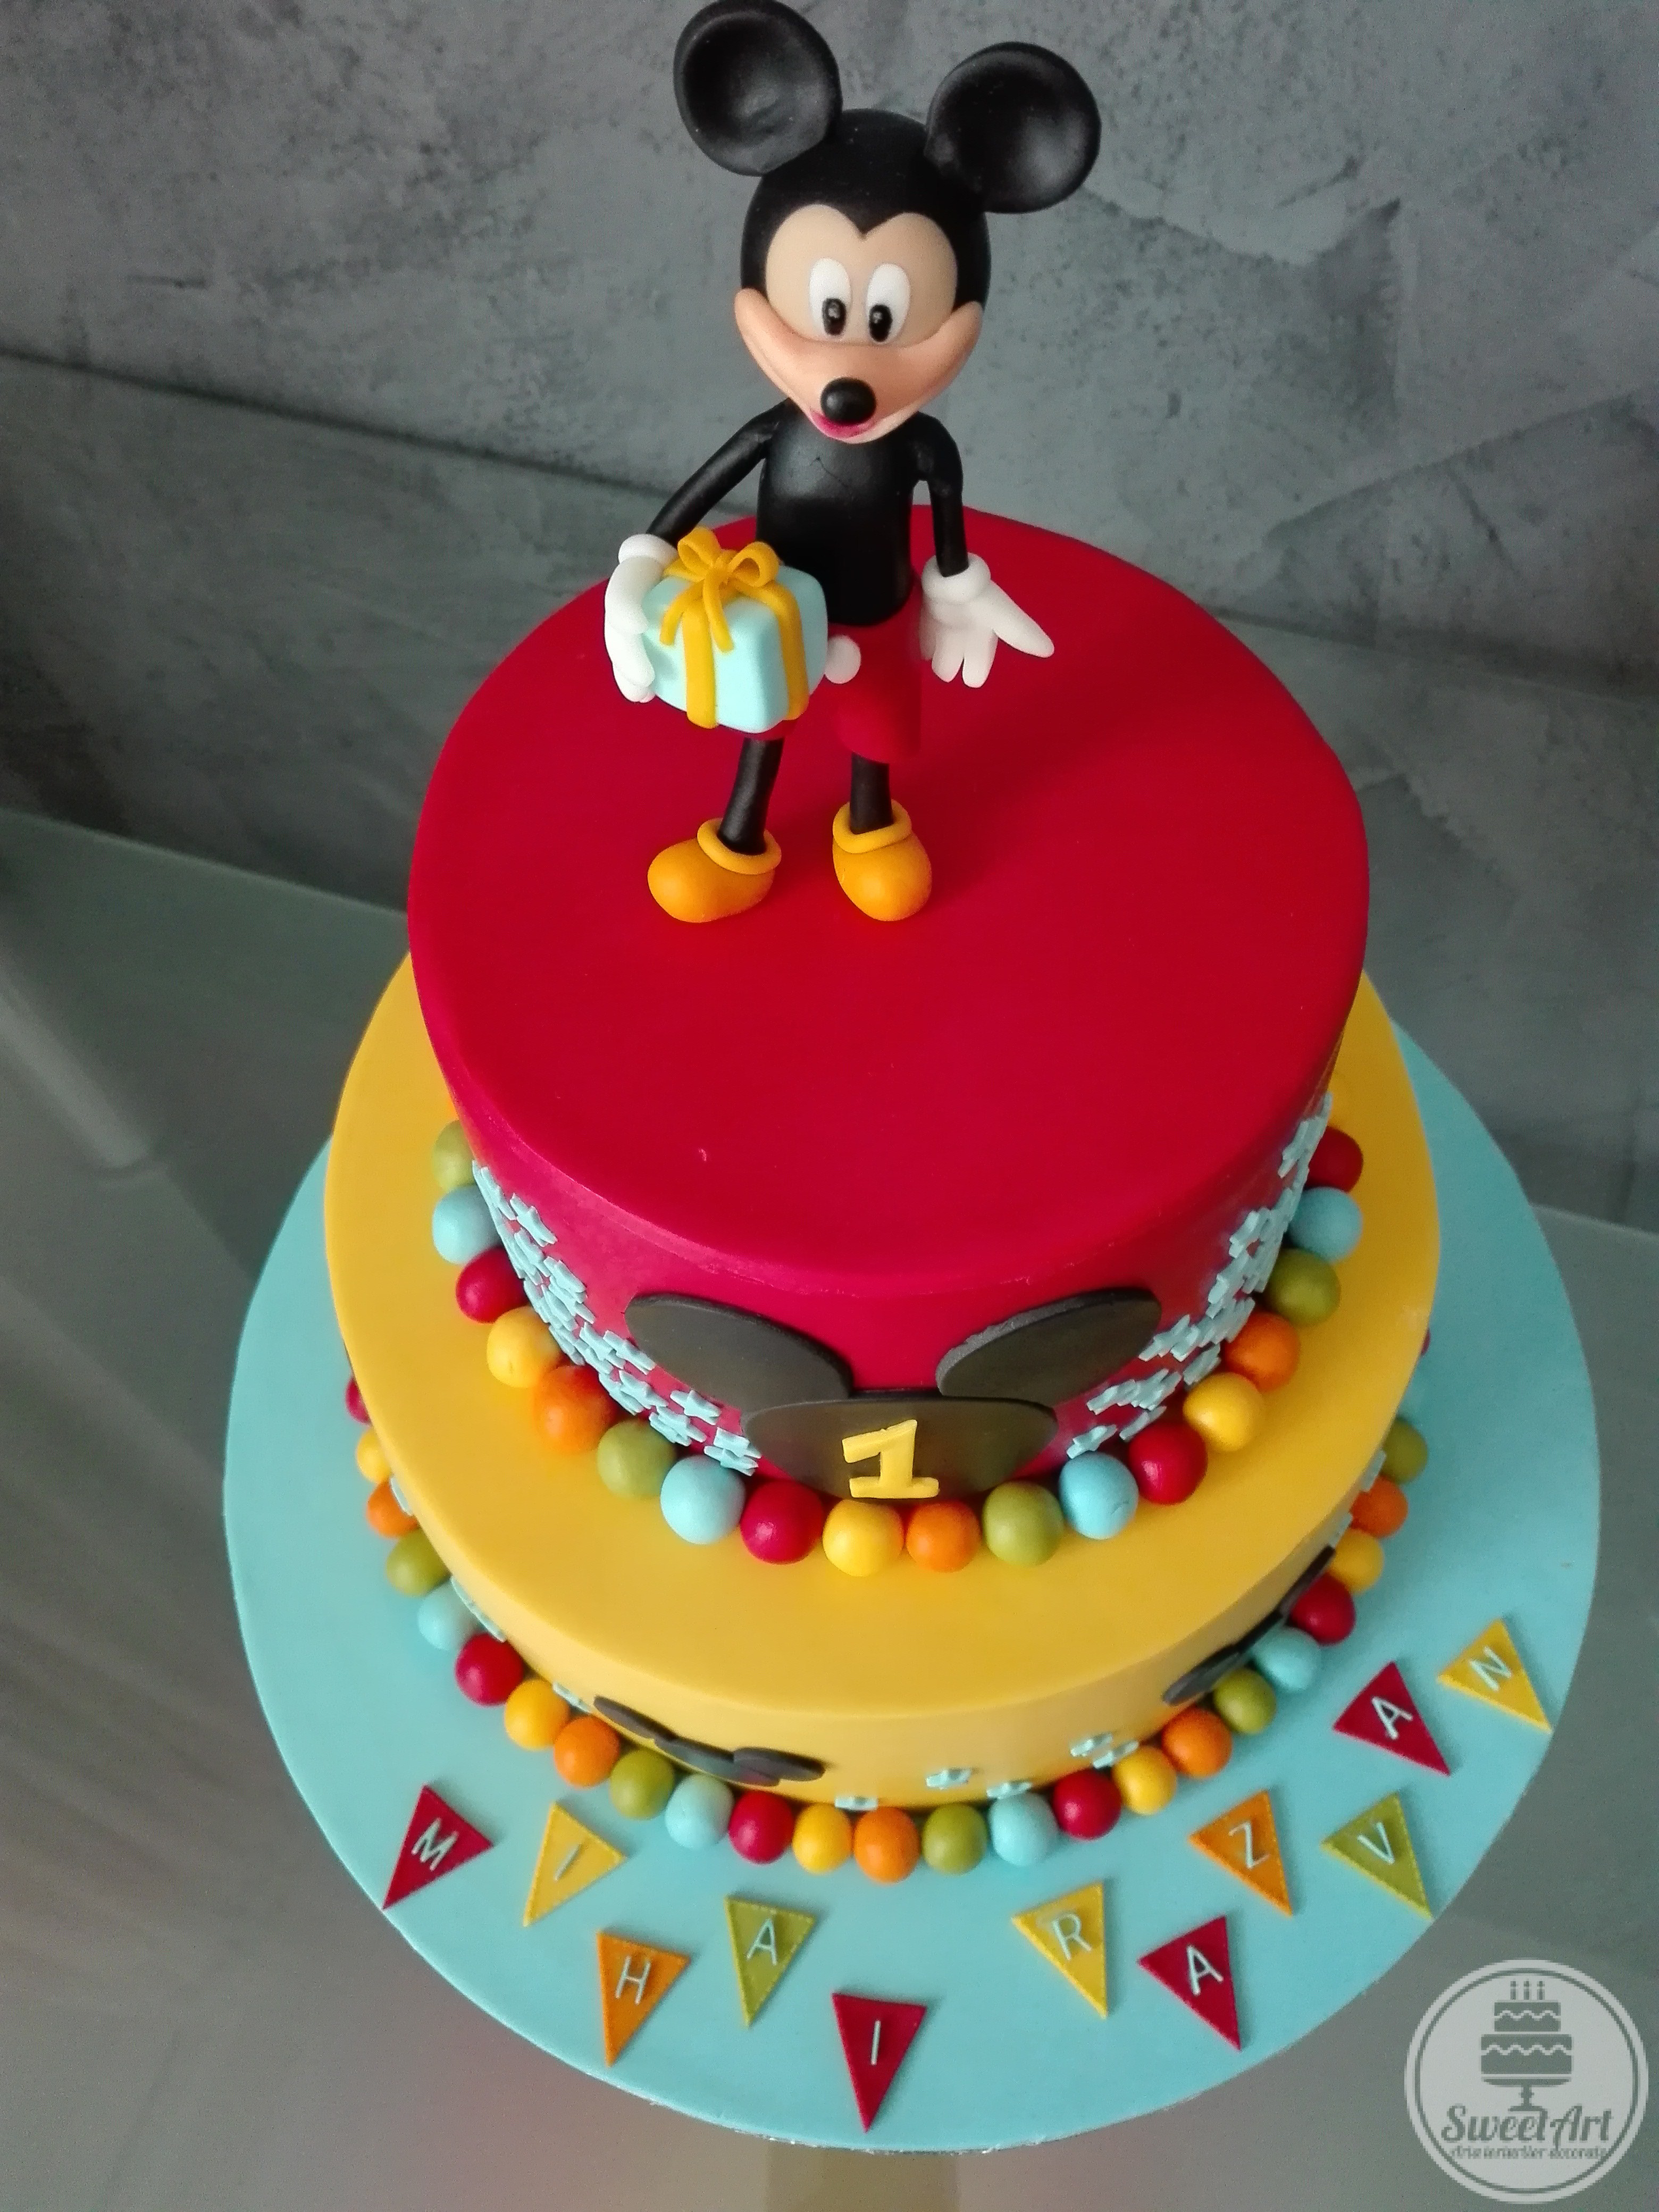 Tort cu Șoricelul Mickey - Mickey Mouse cu un cadou în mână, capul lui Mickey 2D și nunumărate steluțe bleu și bile colorate: roșii, bleu, verzi, portocalii și galbene